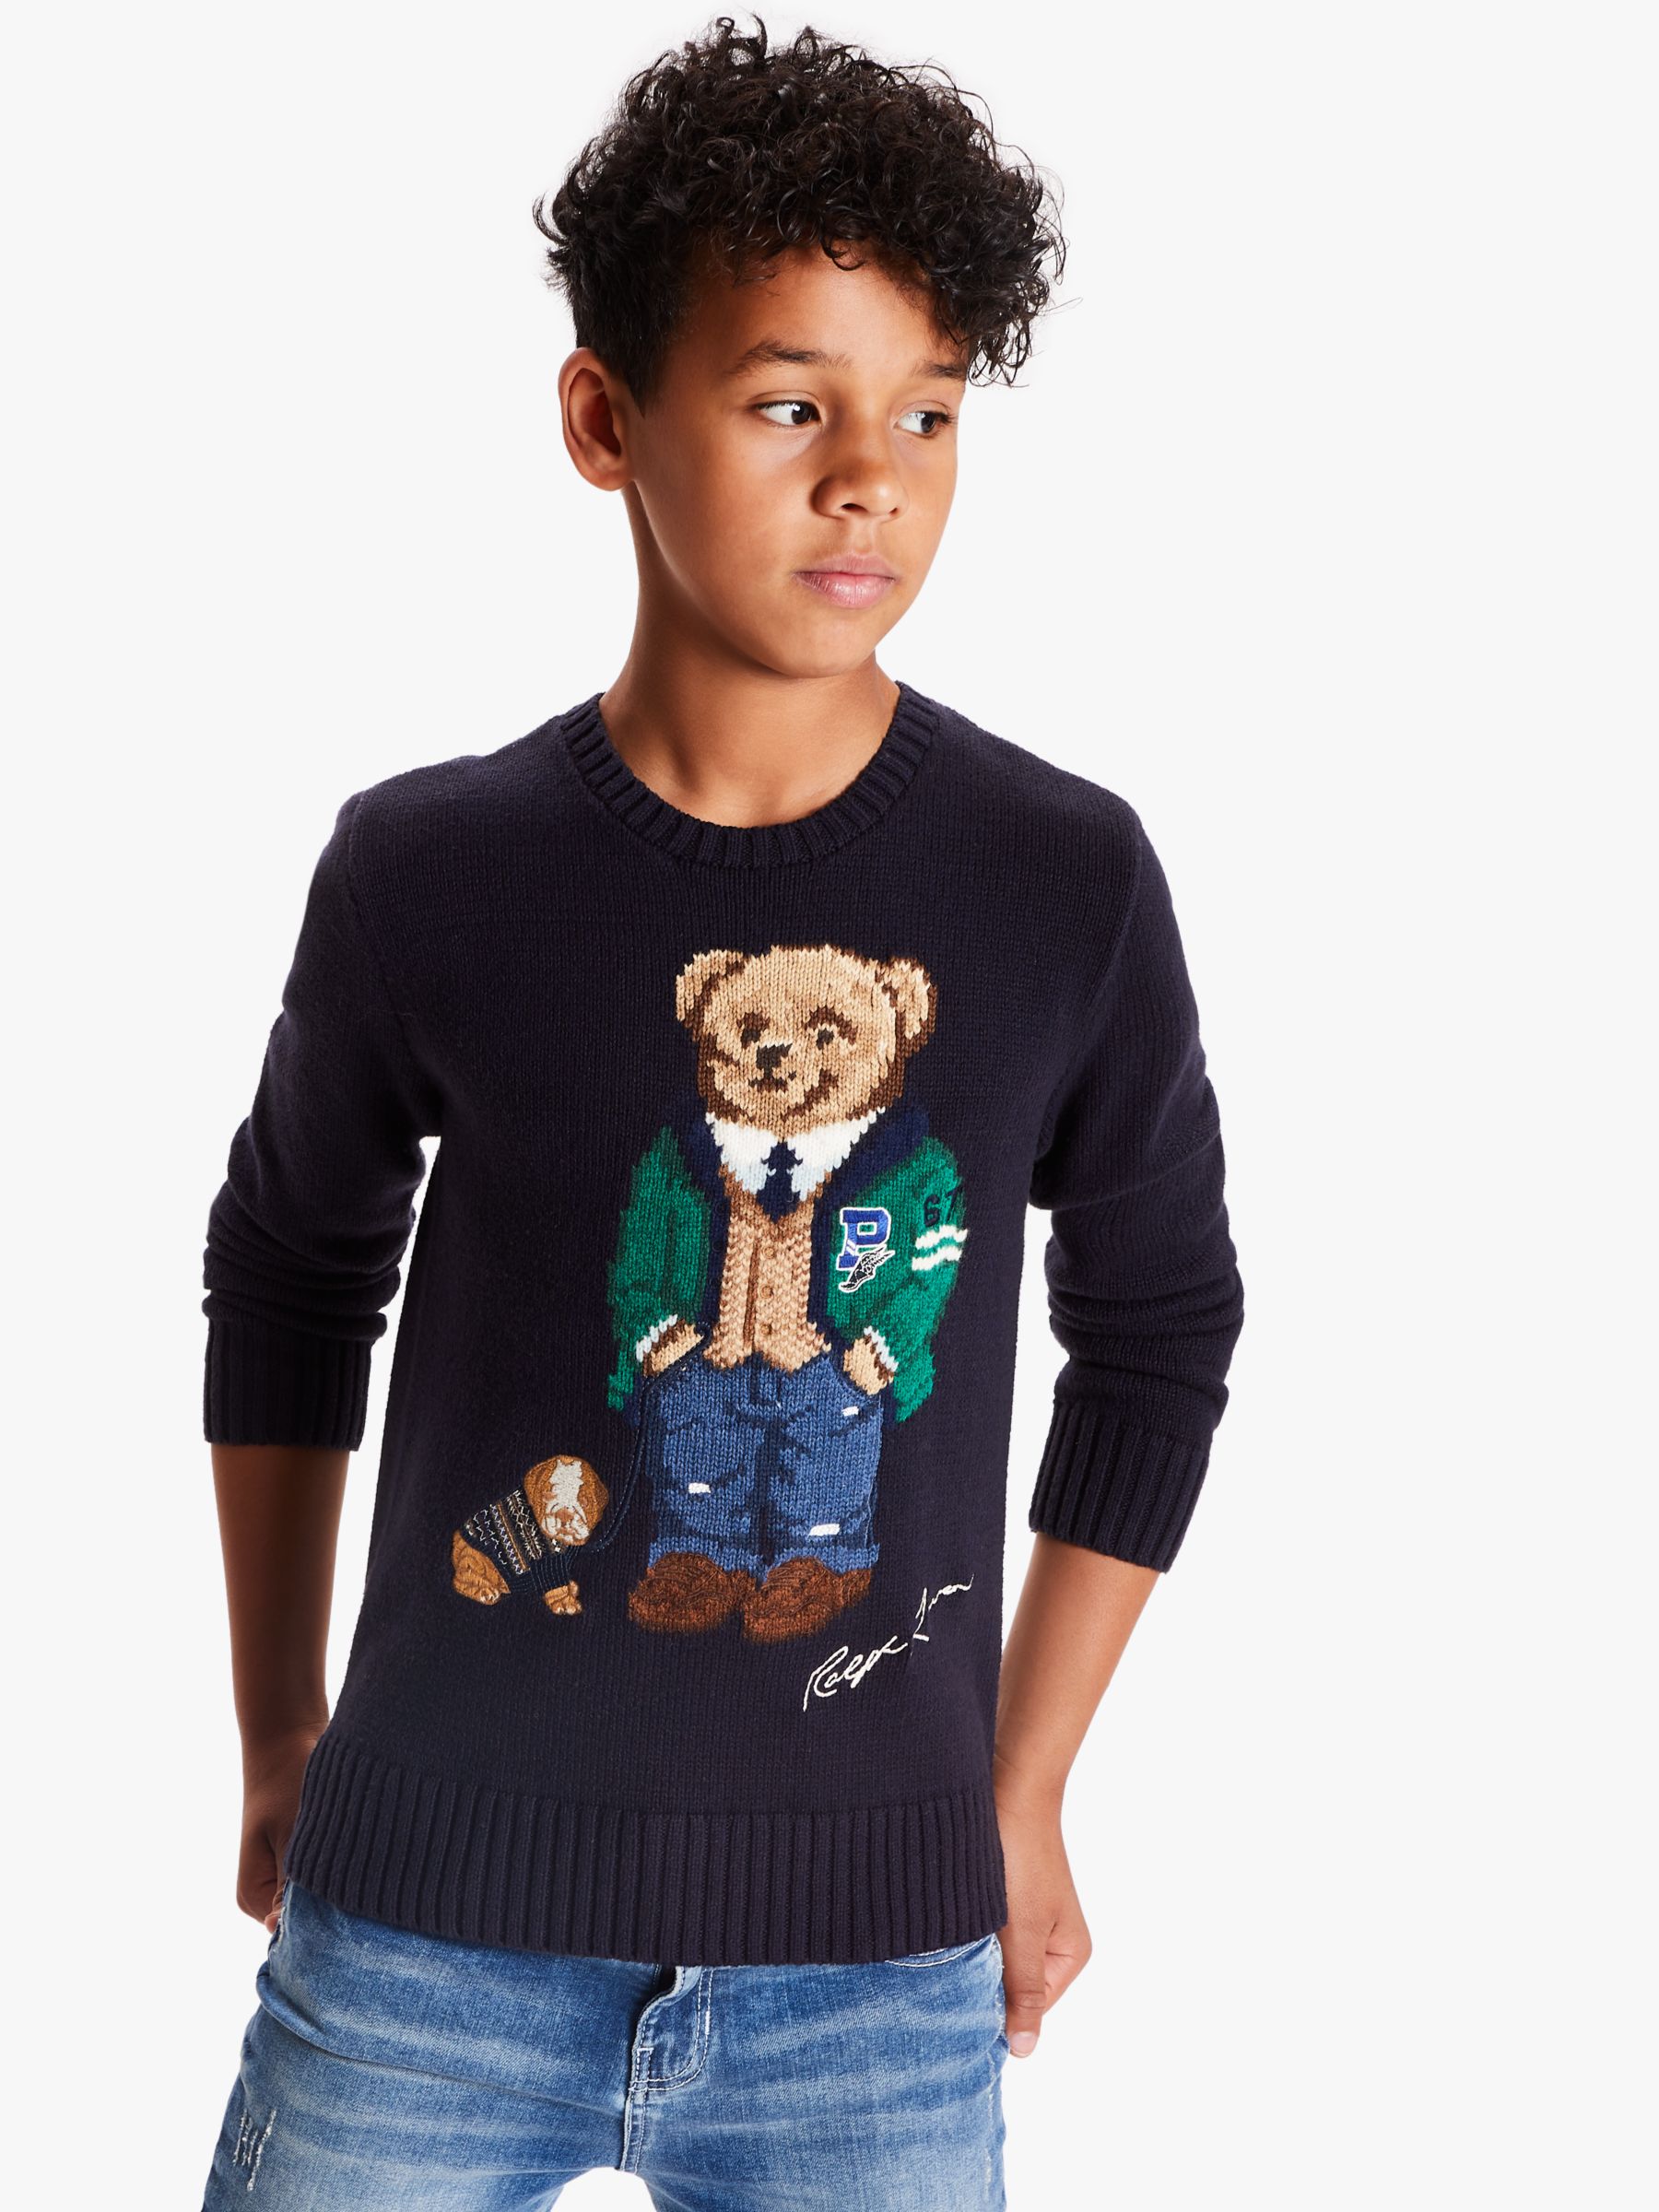 ralph lauren bear sweater kids